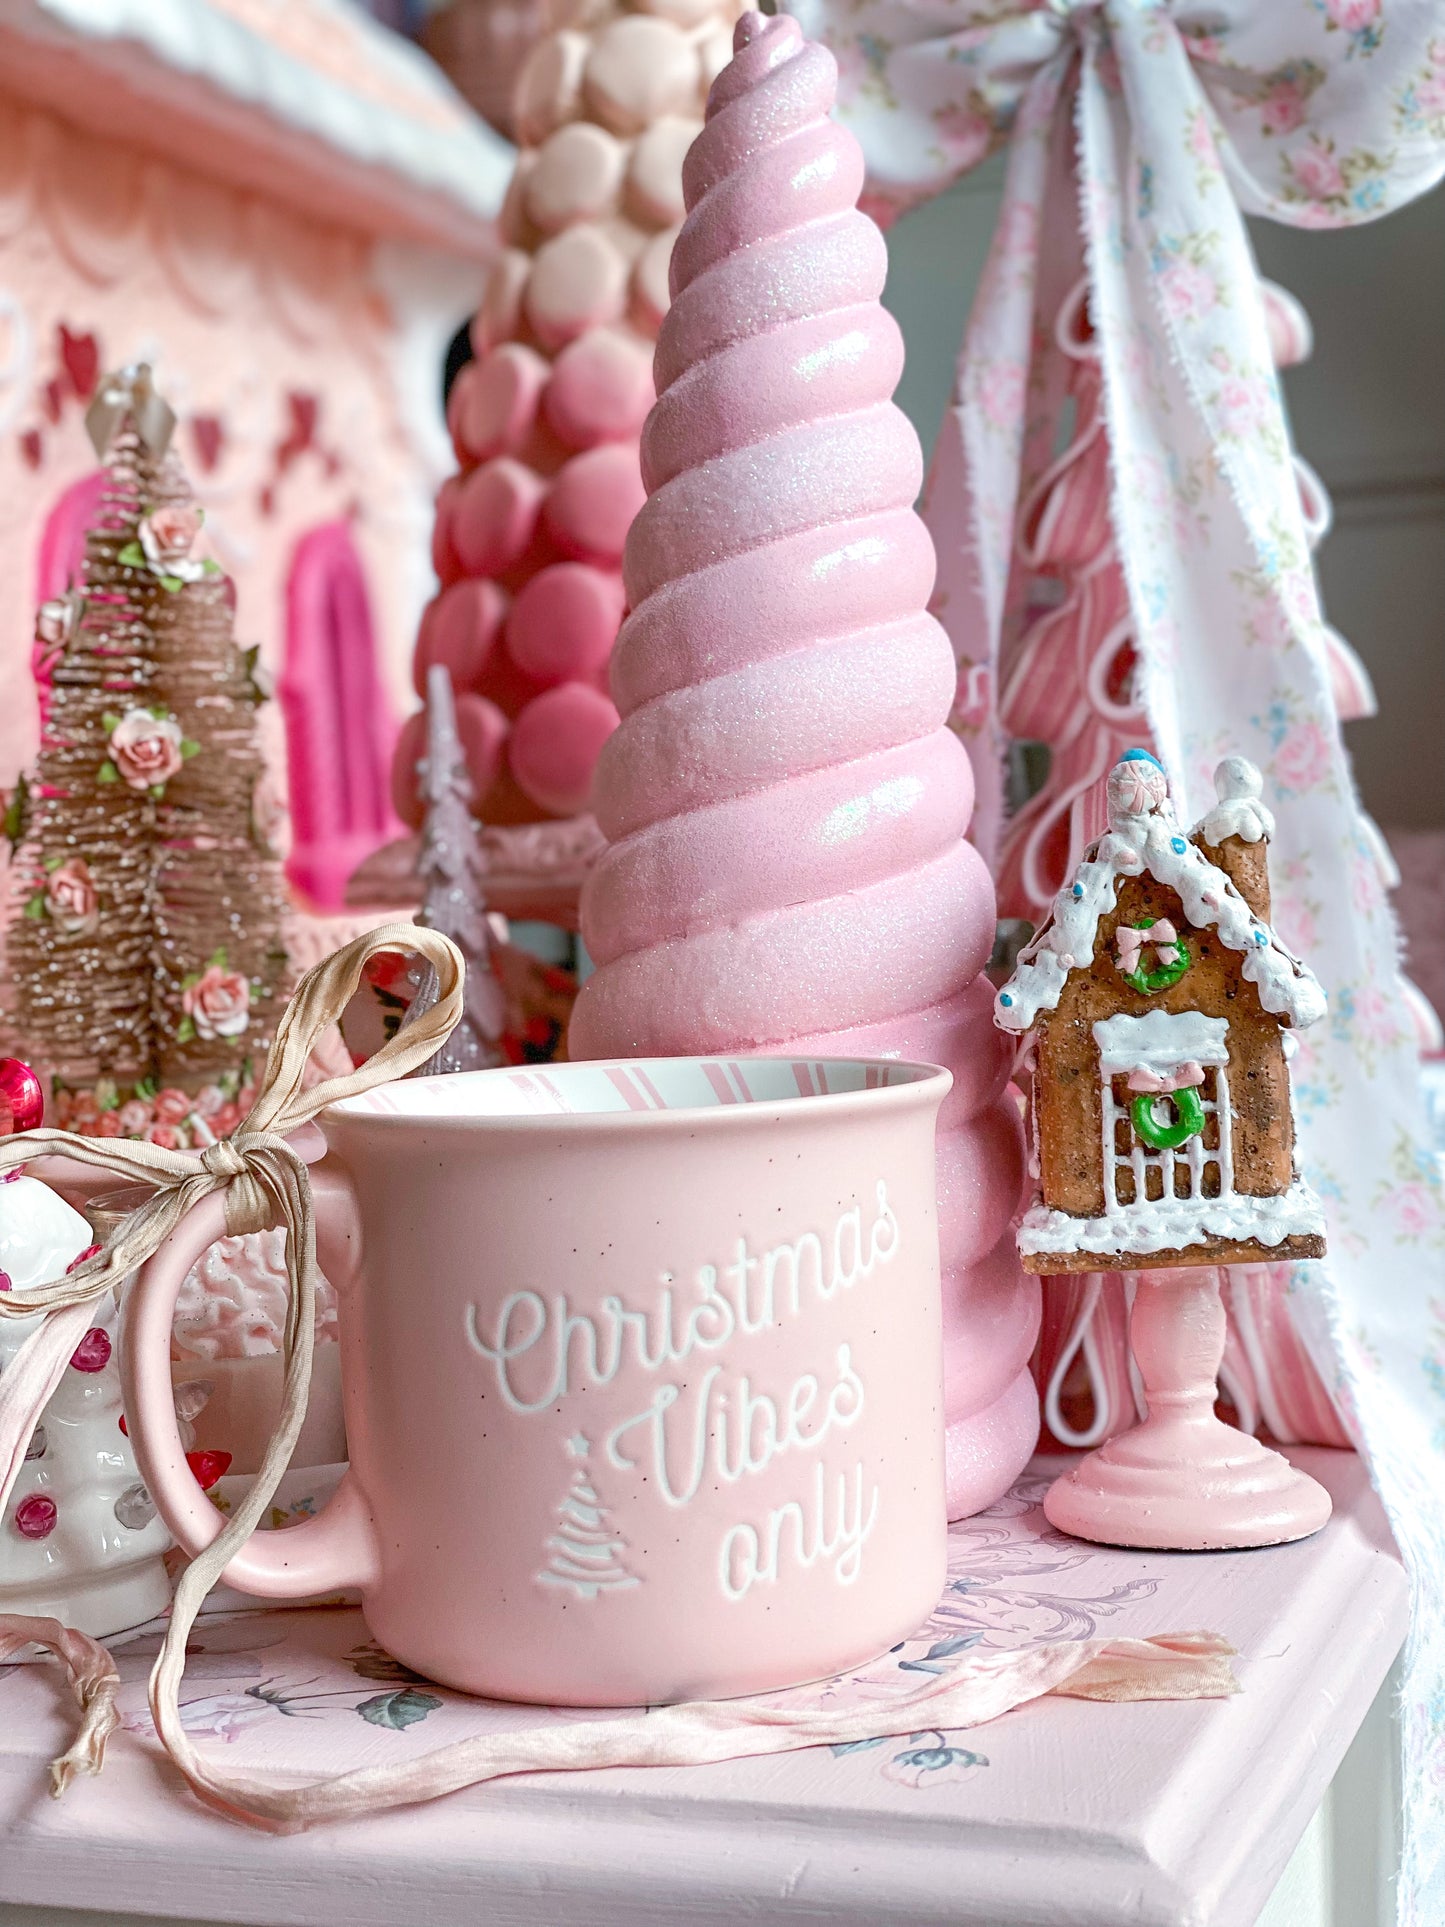 Pink Christmas Vibes Only Mug